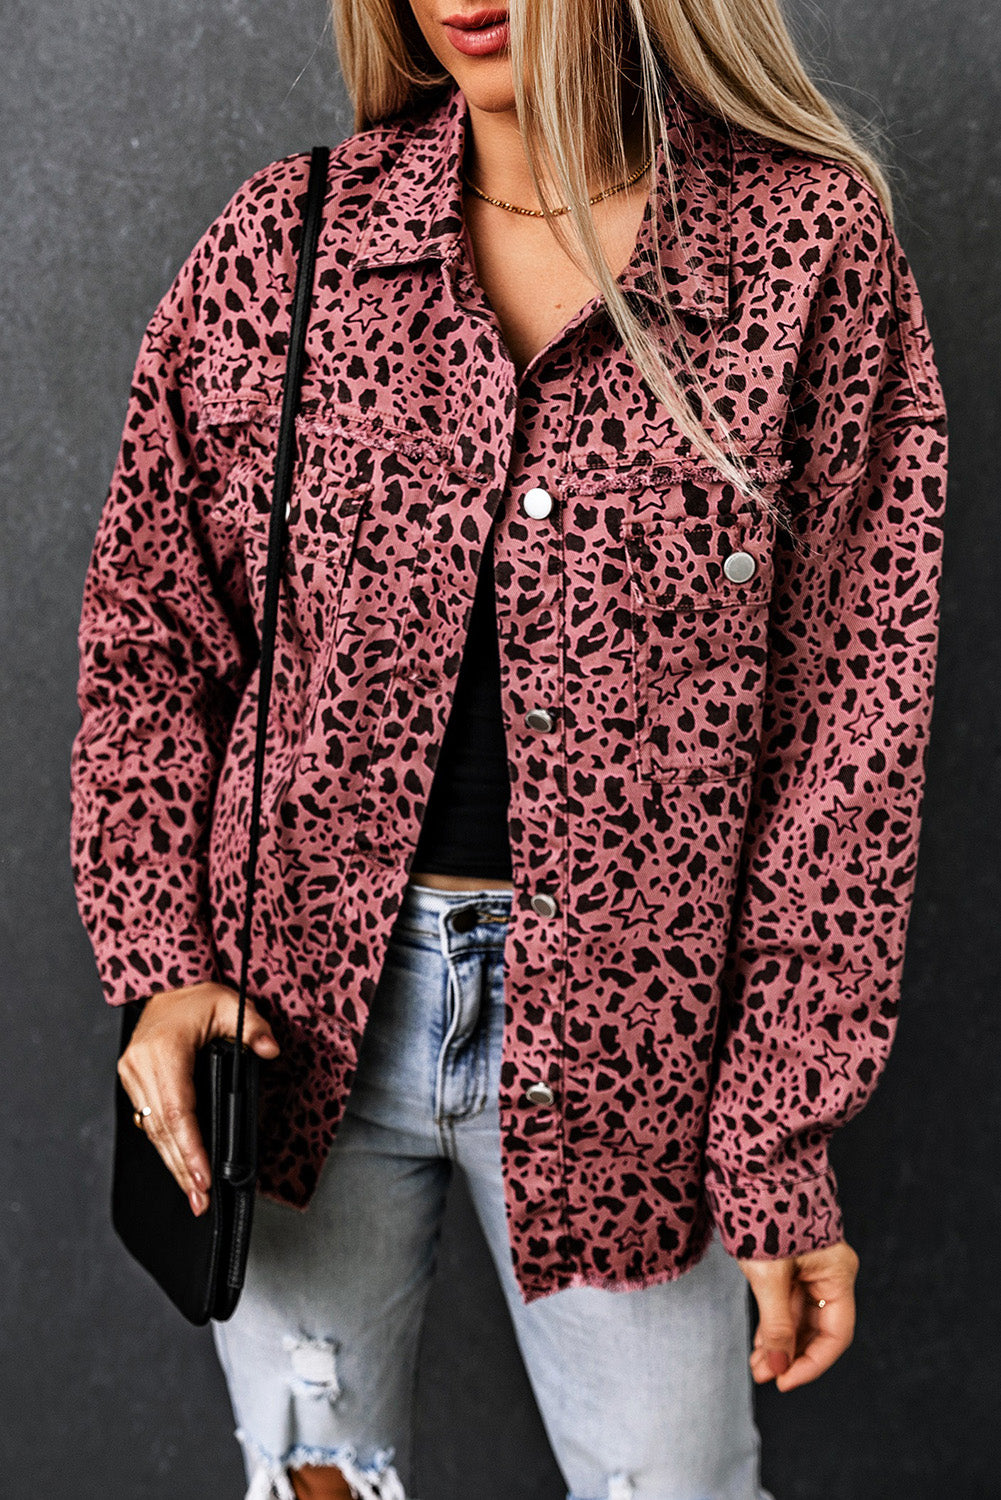 Geknöpfte Jeansjacke mit rosa Sternen- und Tierfleckenmuster